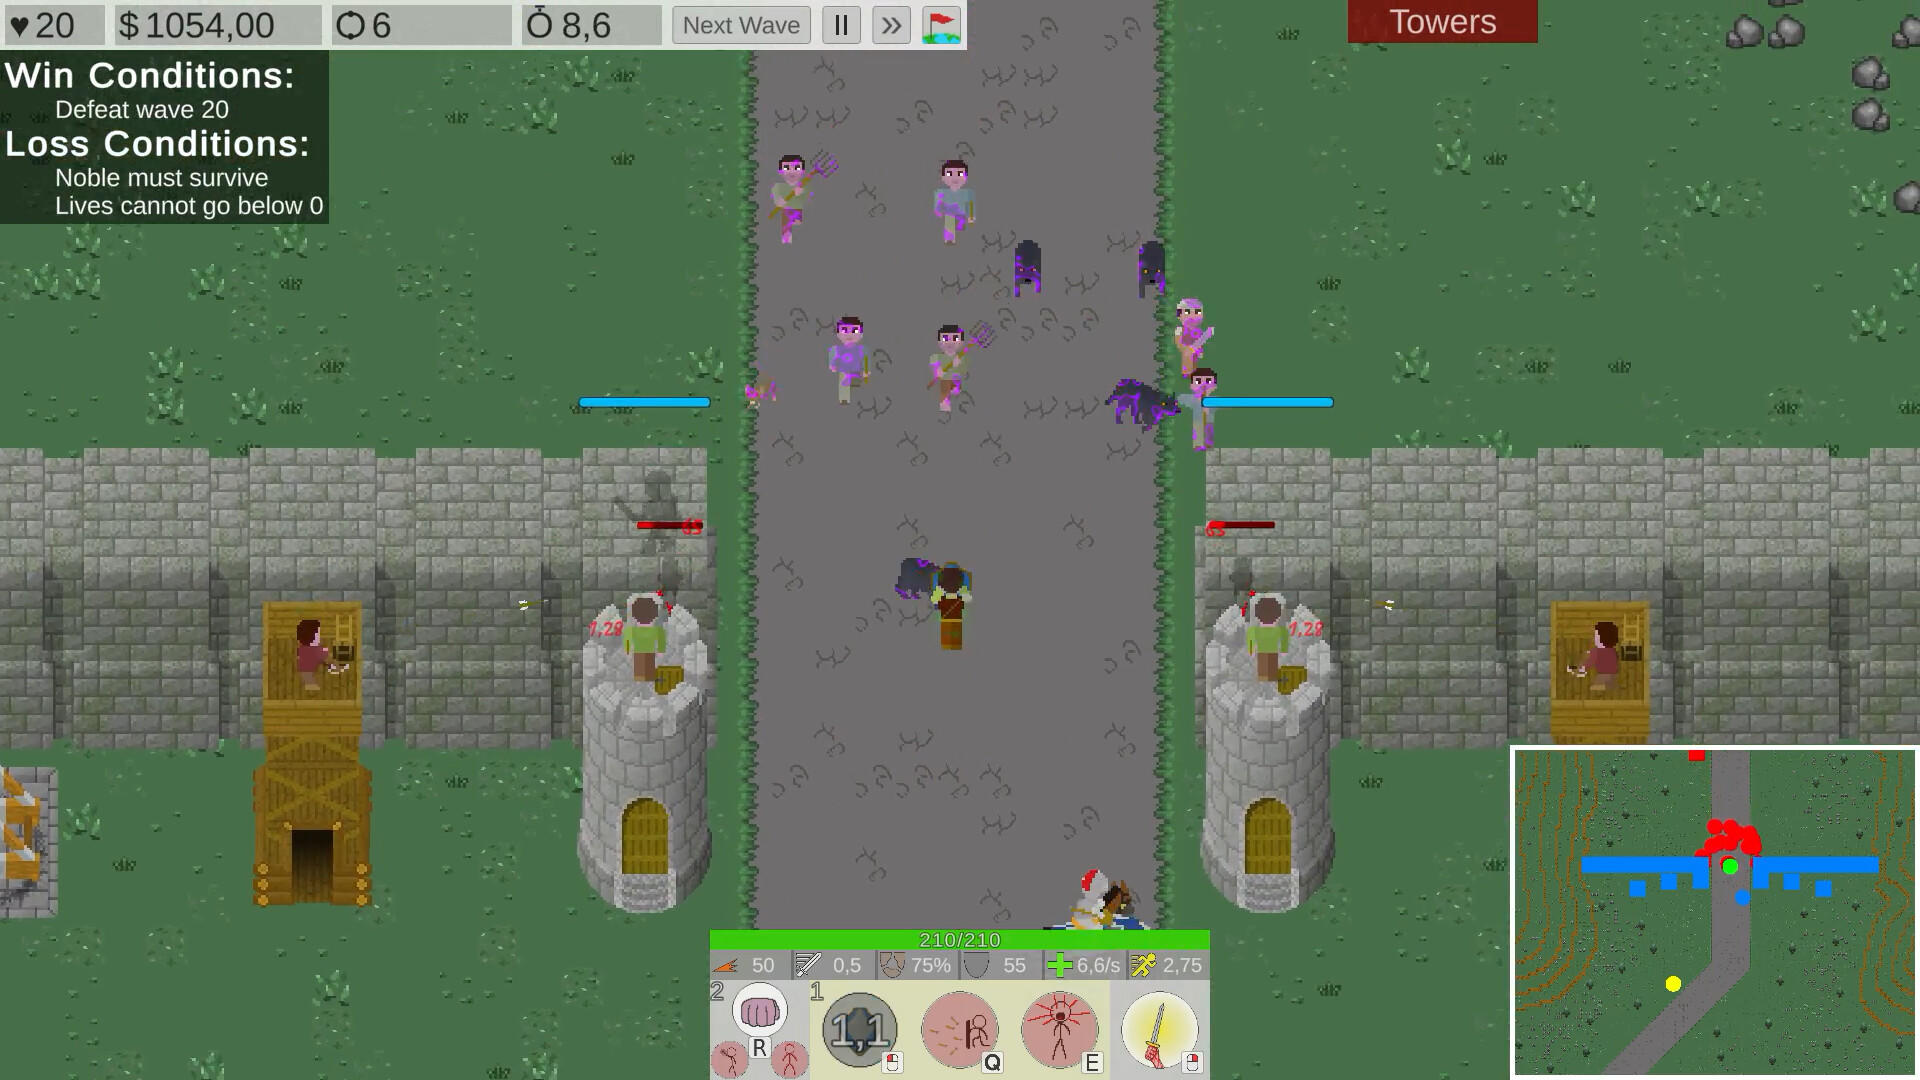 Screenshot 1 of अनाथेमा टॉवर रक्षा 